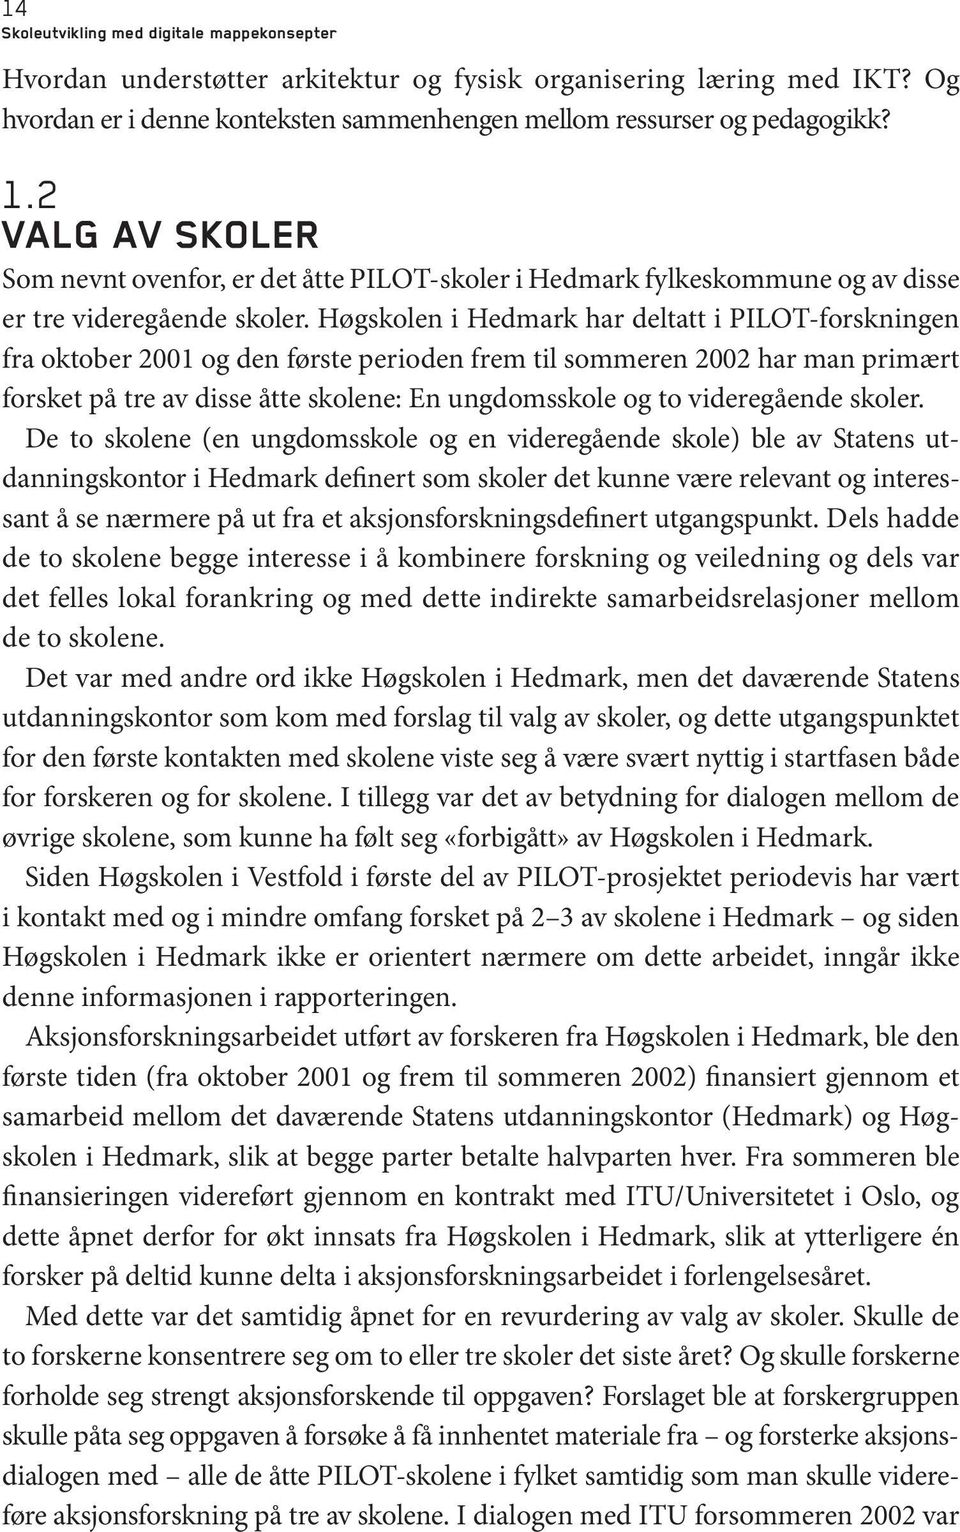 Høgskolen i Hedmark har deltatt i PILOT-forskningen fra oktober 2001 og den første perioden frem til sommeren 2002 har man primært forsket på tre av disse åtte skolene: En ungdomsskole og to